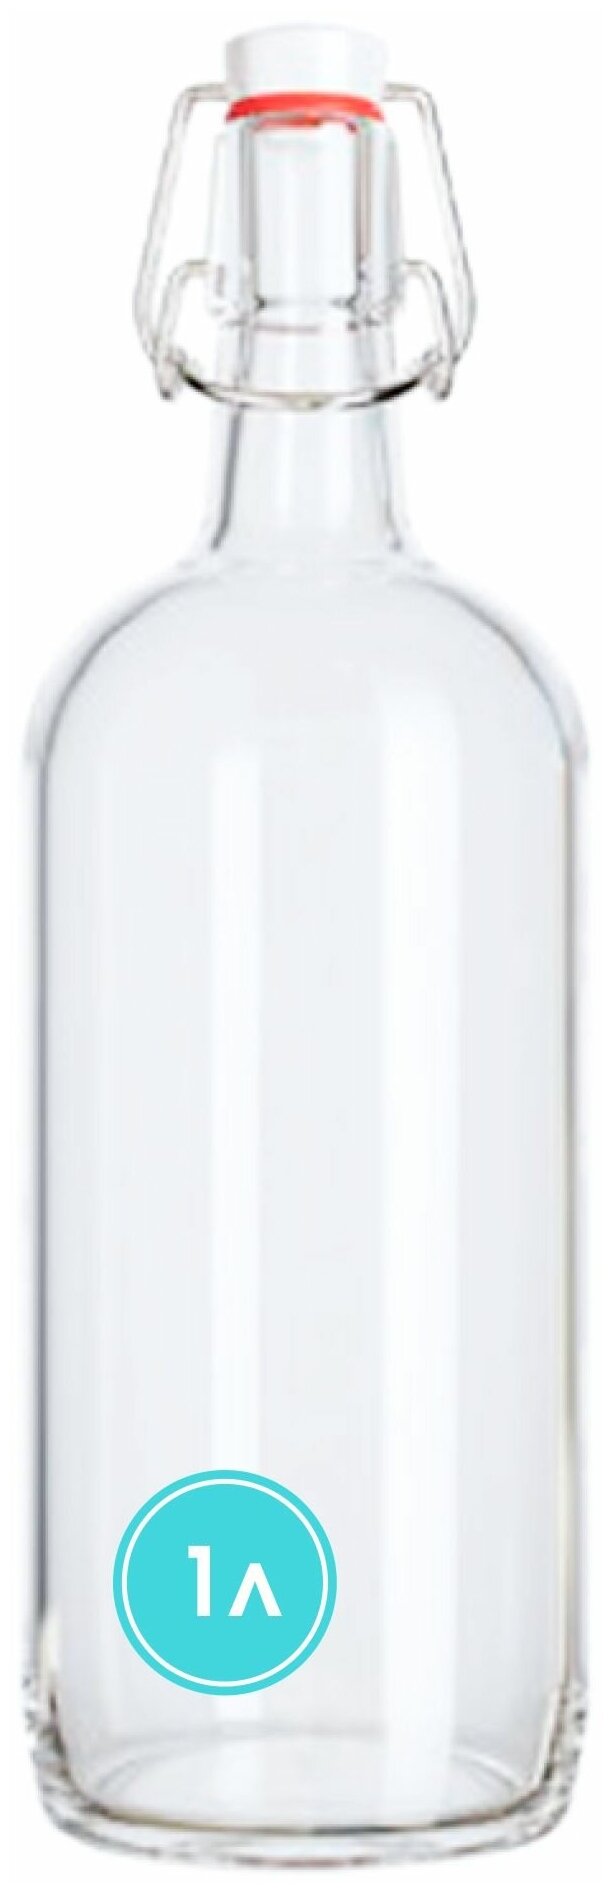 Бутылка бугельная с пробкой 1 литр, светлое стекло / Для масла / Для вина / Для настоек / Для сока / Пивная бутыль.